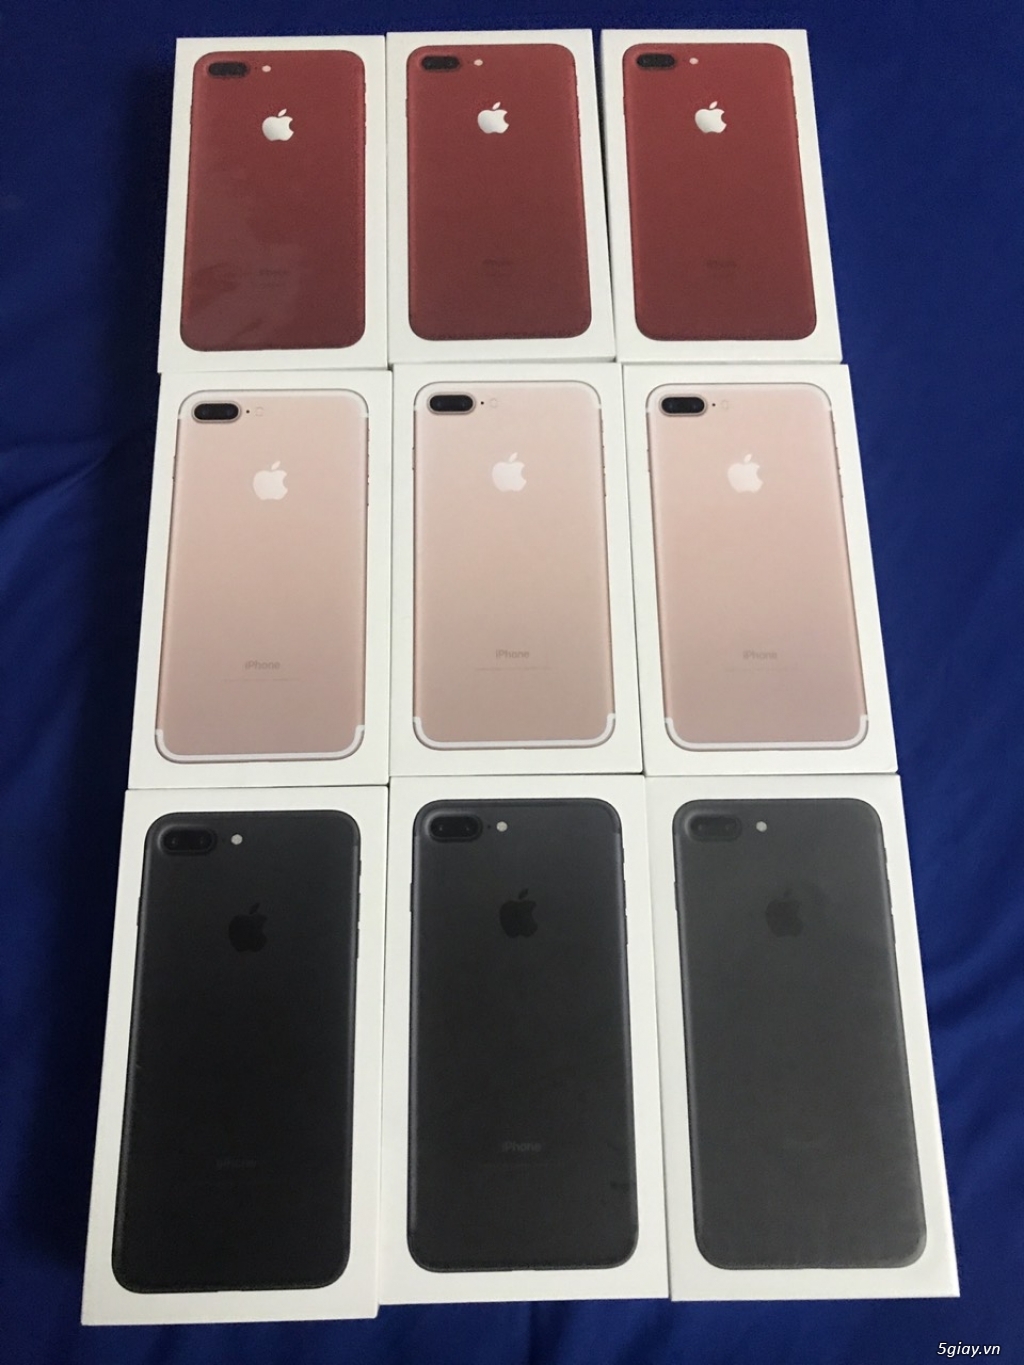 iphone 7plus 128G hồng đen đỏ nguyên seal lock sprint giá cực tốt! - 1